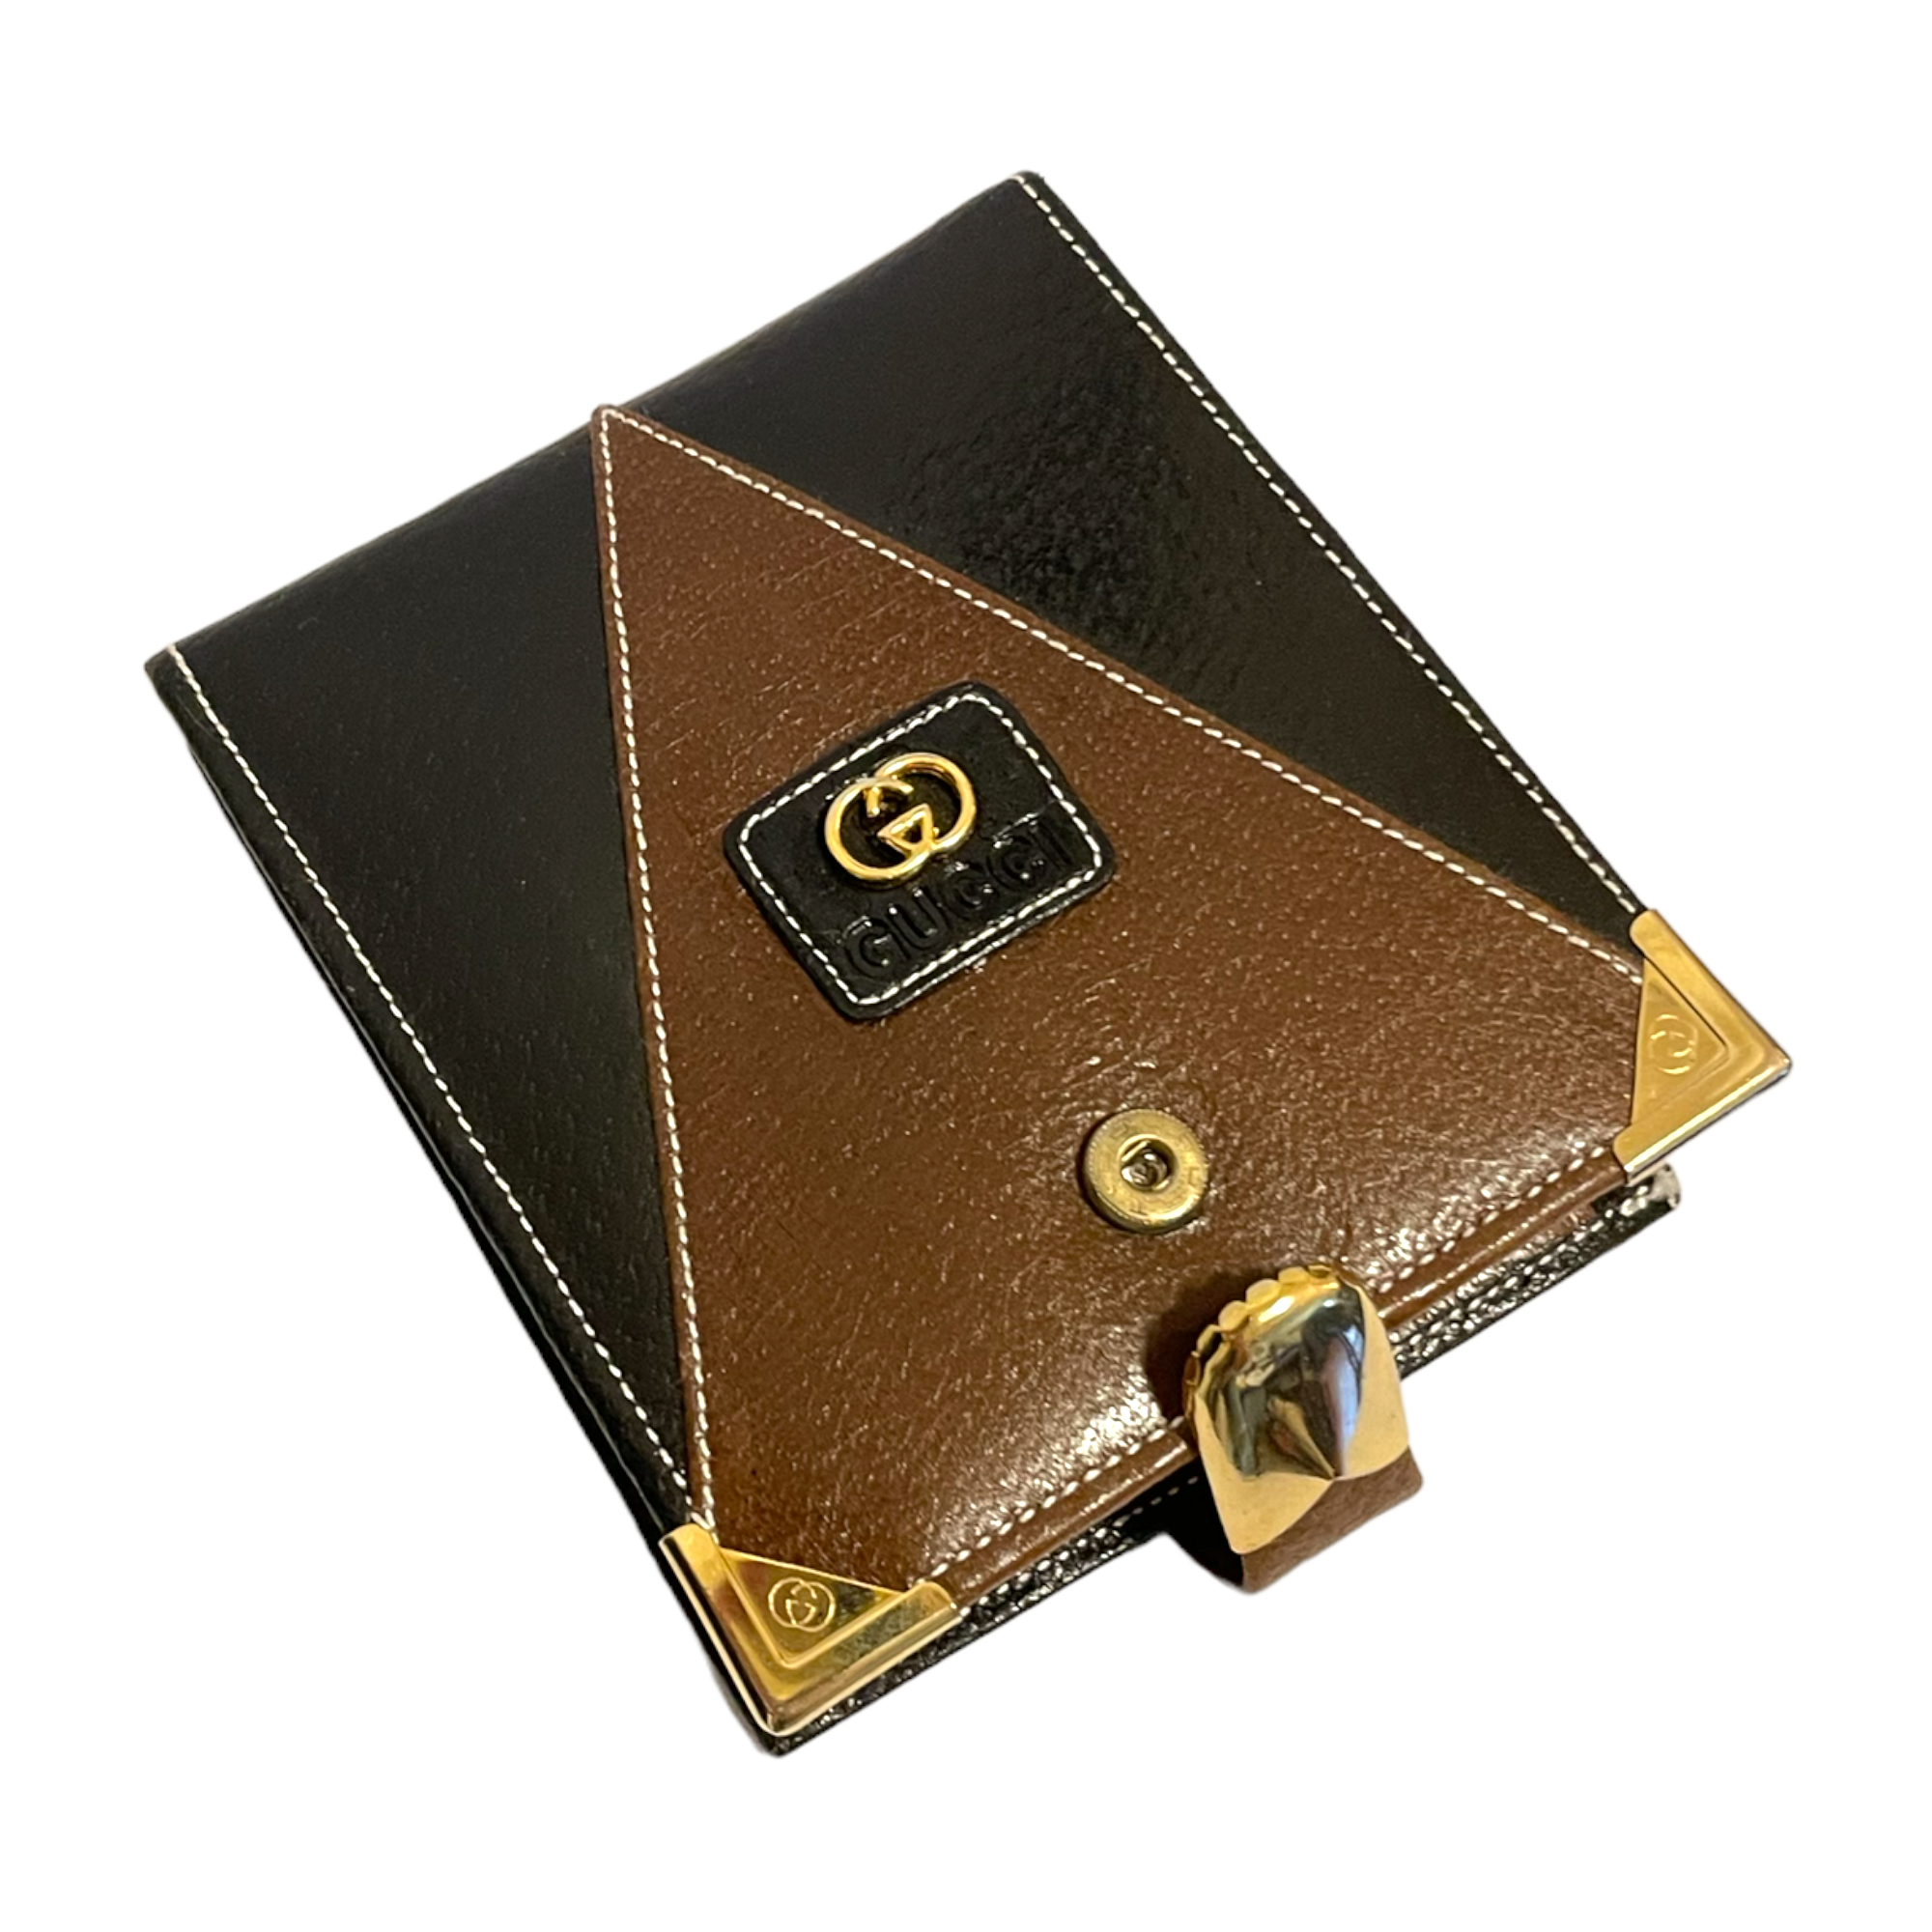 GUCCI RARE & UNIQUE Vintage GUCCI Bi-Fold Two-Tone Leather Wallet